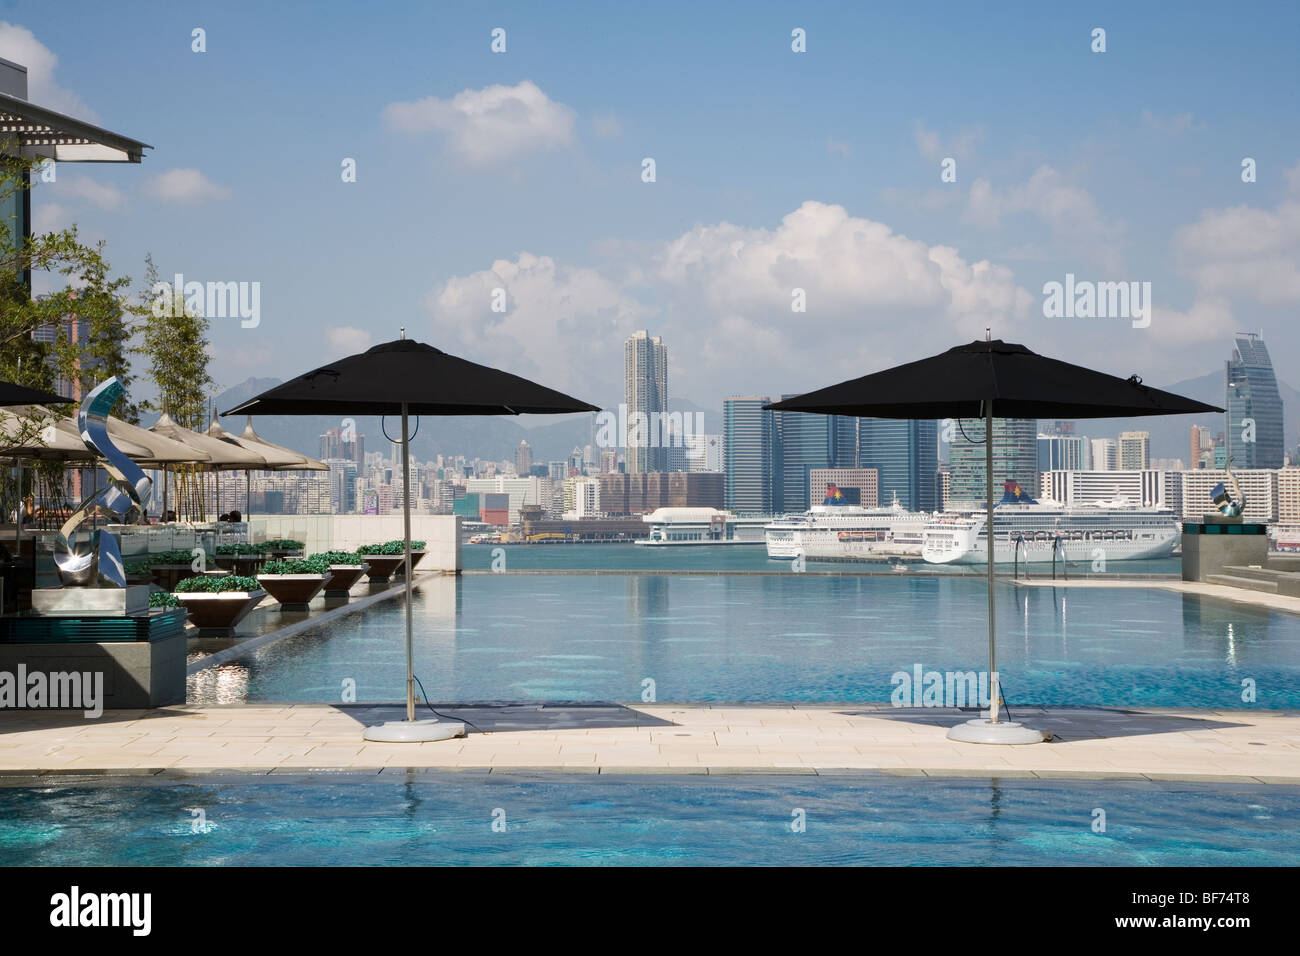 Hong Kong, bay, China, view from a pool Stock Photo